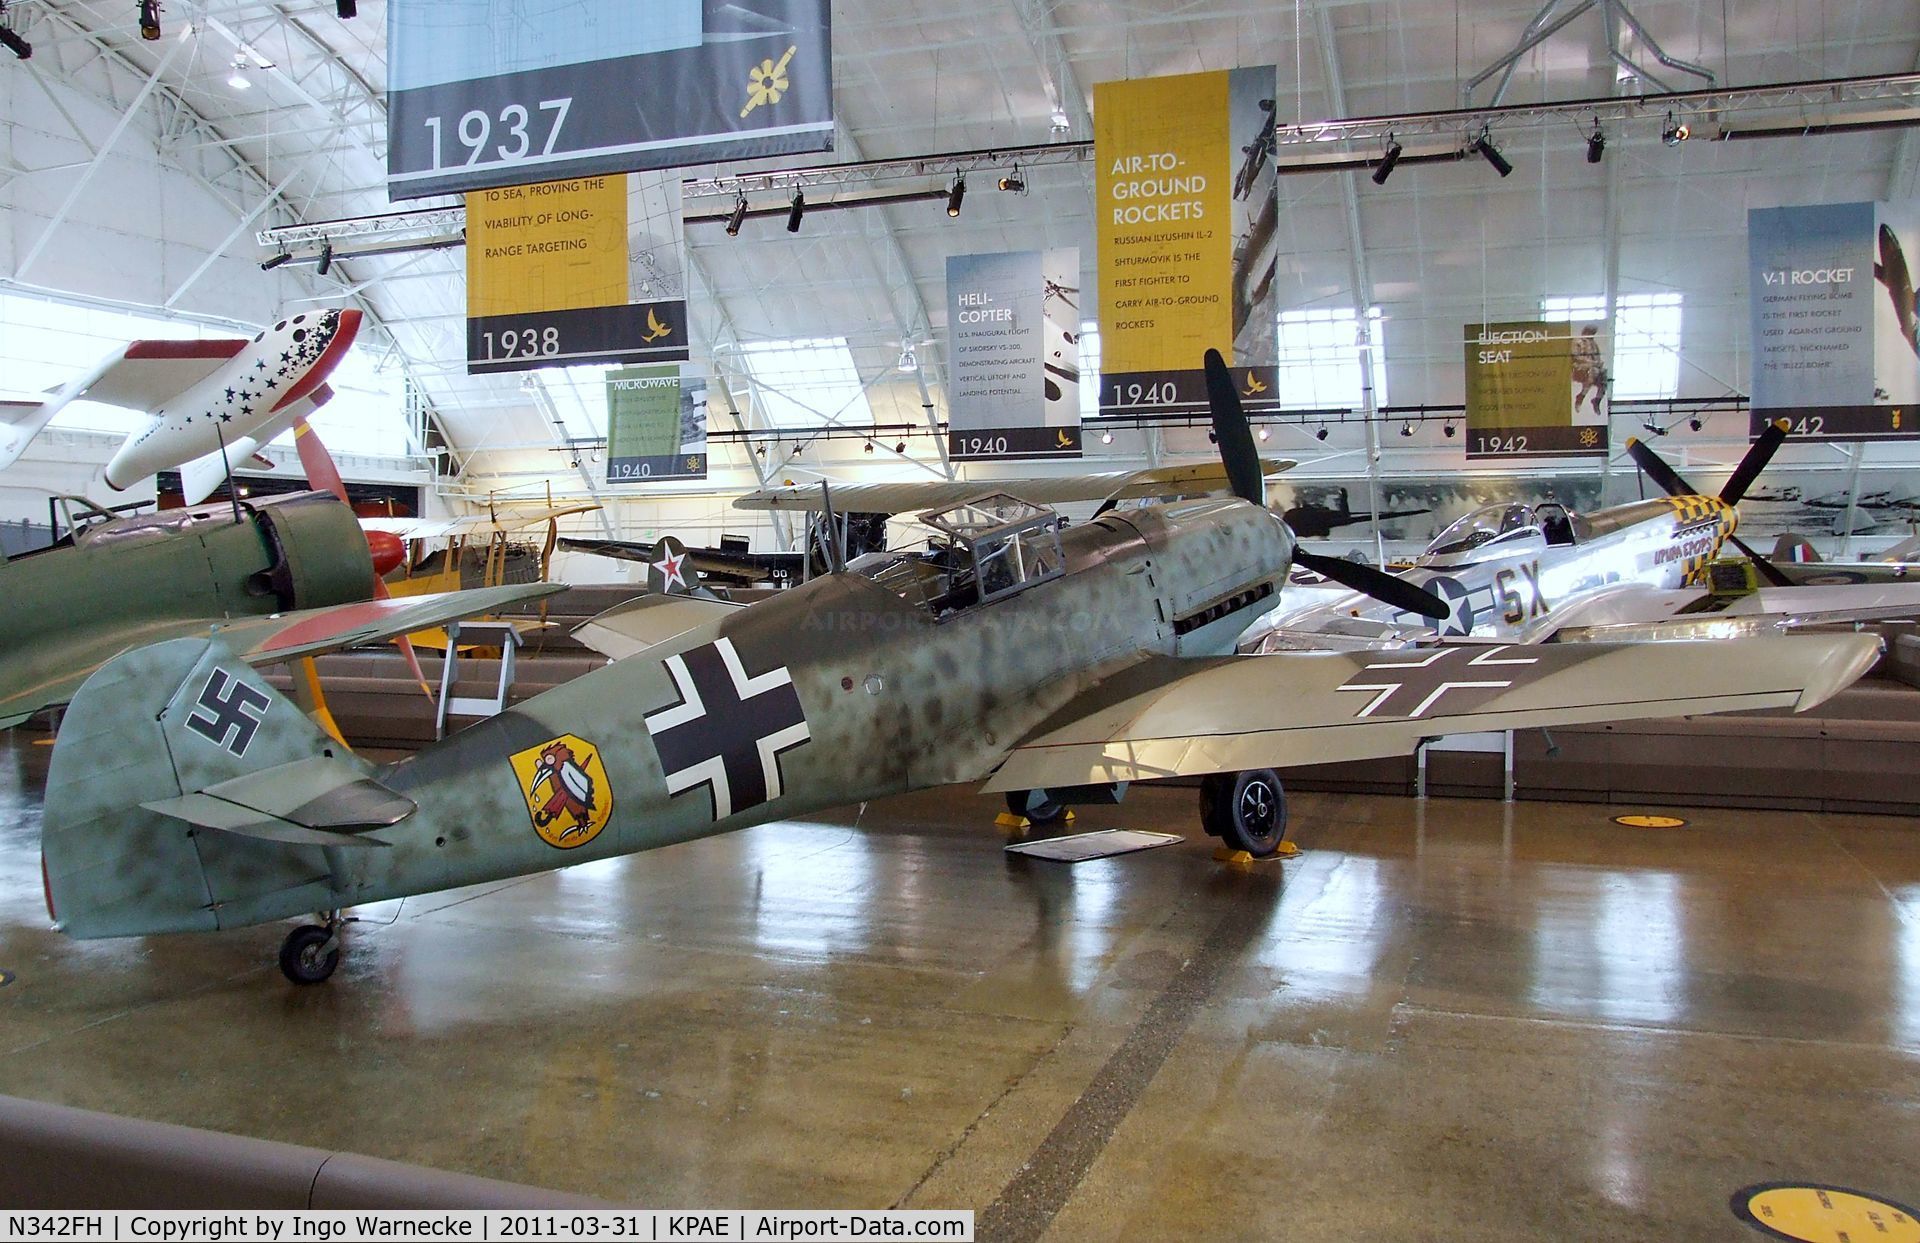 N342FH, 1939 Messerschmitt Bf-109E C/N 1342, Messerschmitt Bf 109E at the Flying Heritage Collection, Everett WA